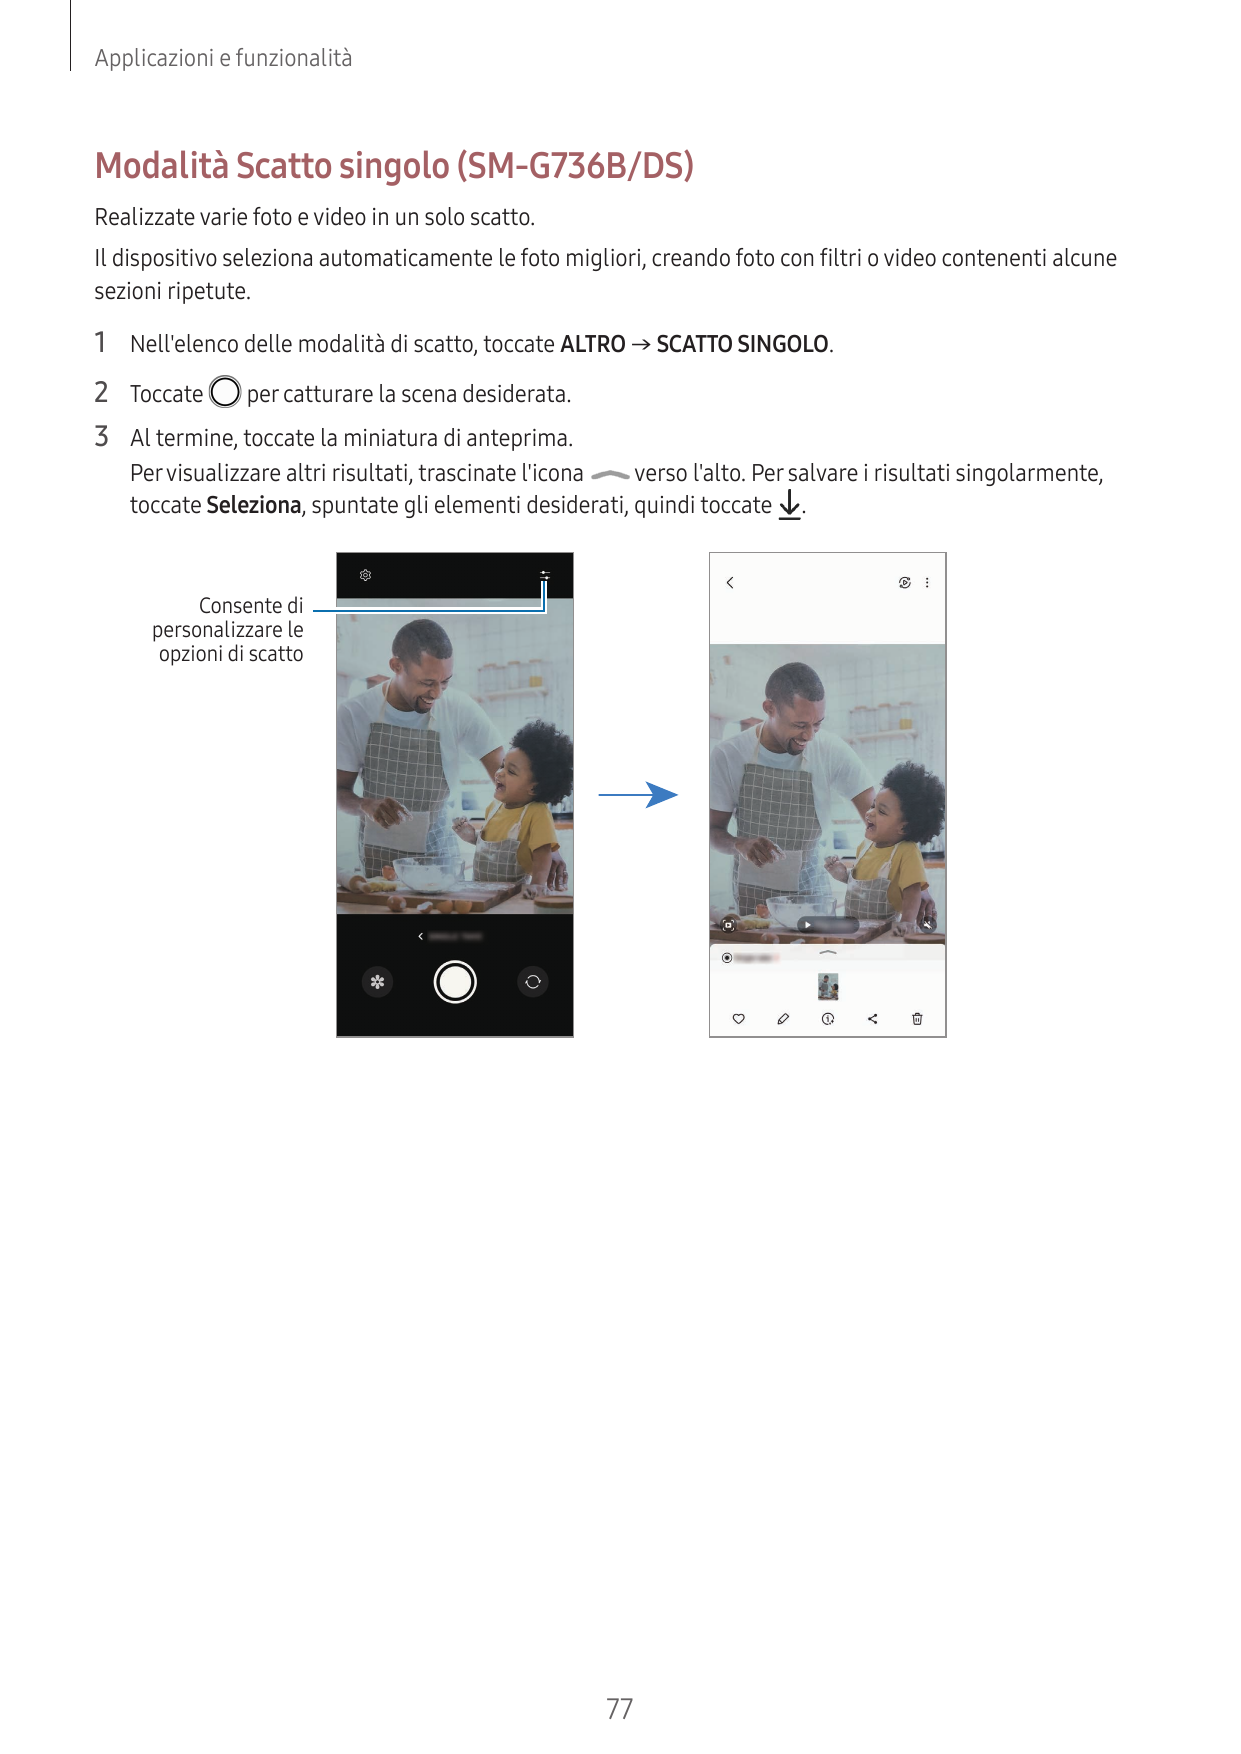 Applicazioni e funzionalitàModalità Scatto singolo (SM-G736B/DS)Realizzate varie foto e video in un solo scatto.Il dispositivo s